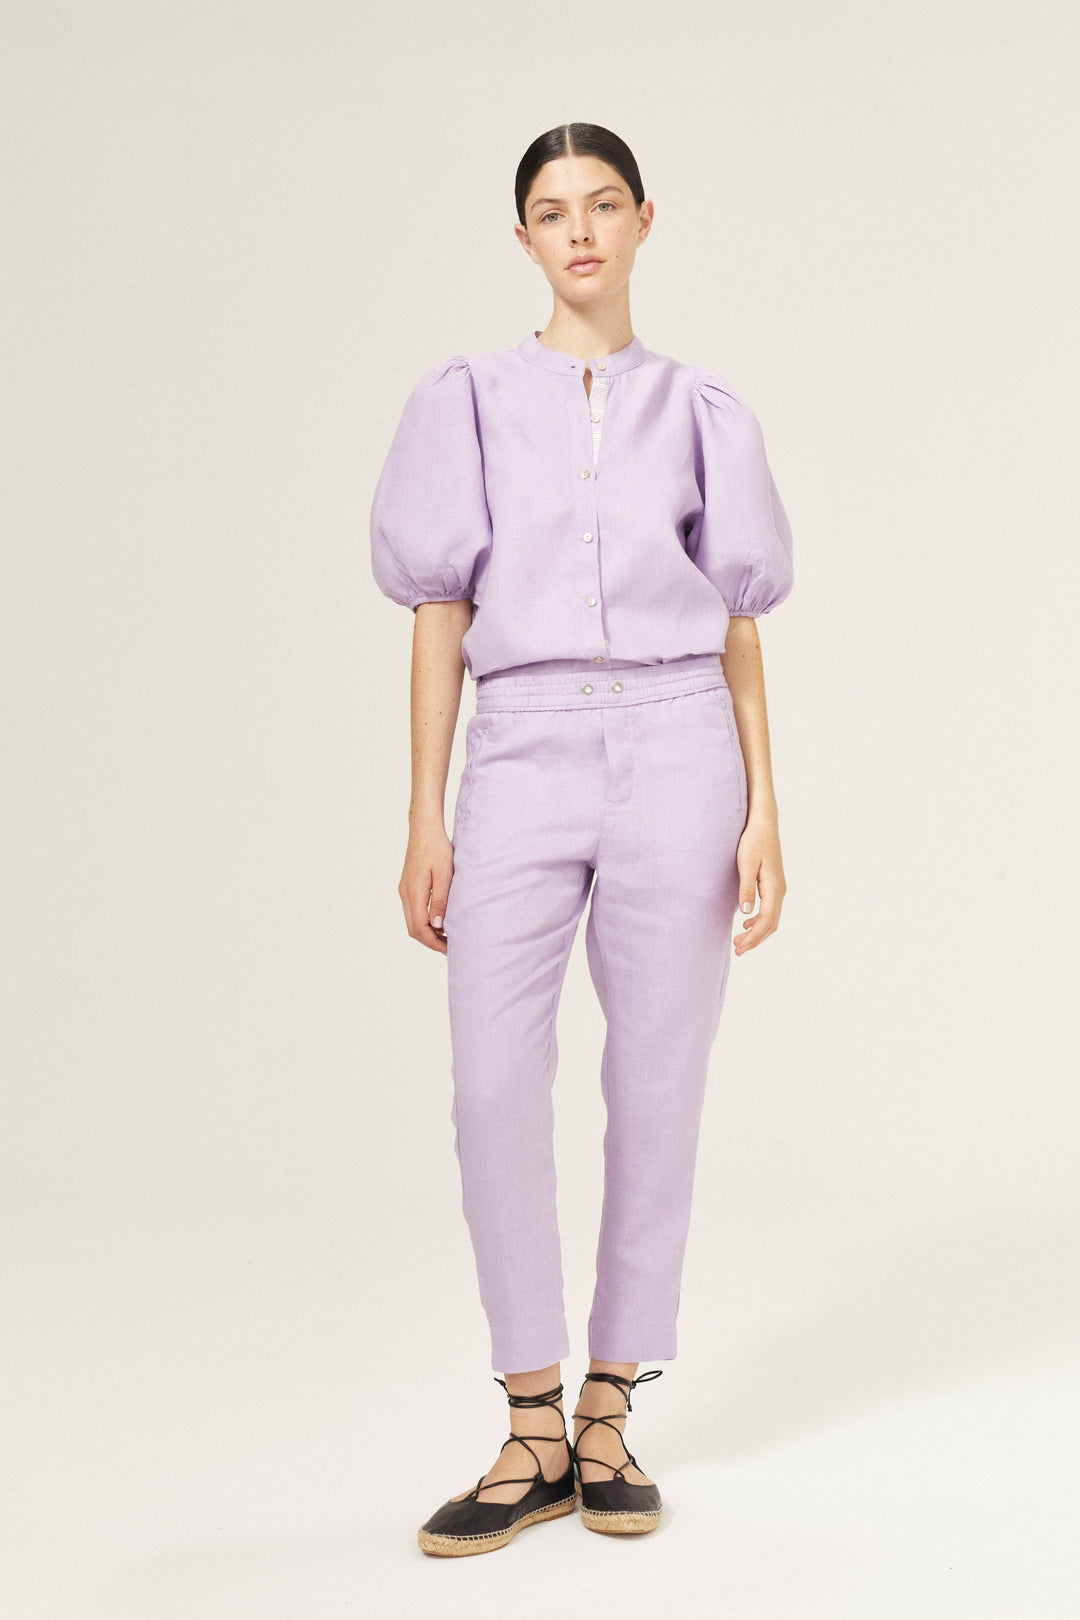 Lanhtropy Bubble Linen Shirt | Bright Lilac